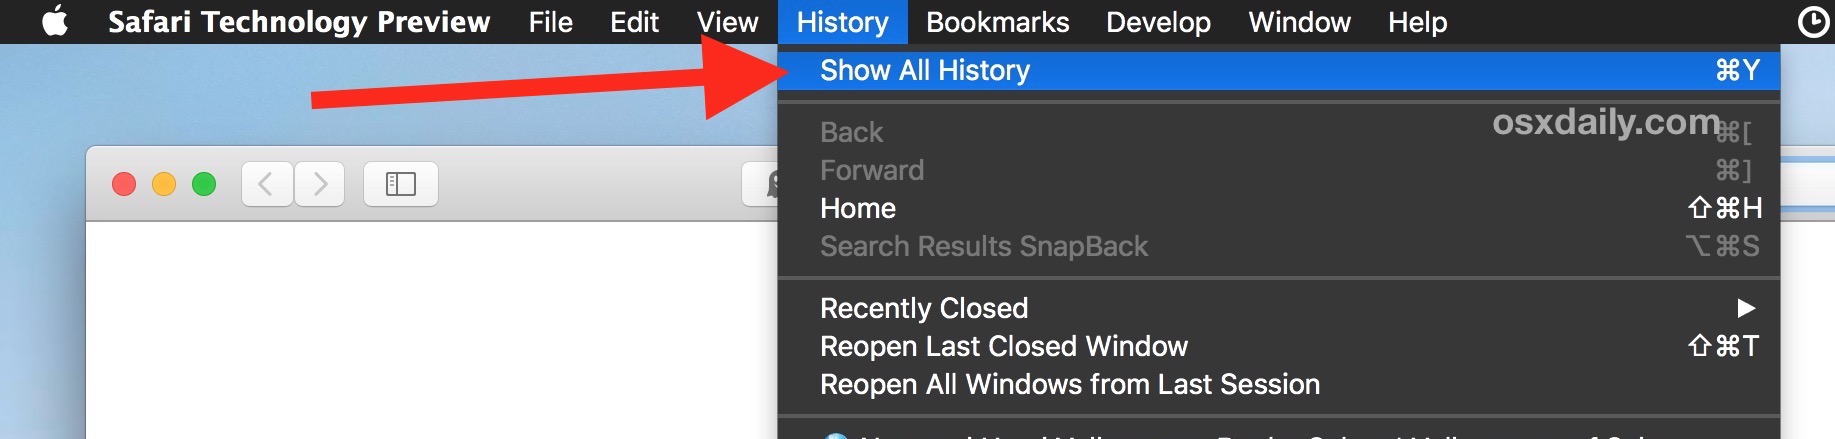 Cómo ver todo el historial de Safari en Mac